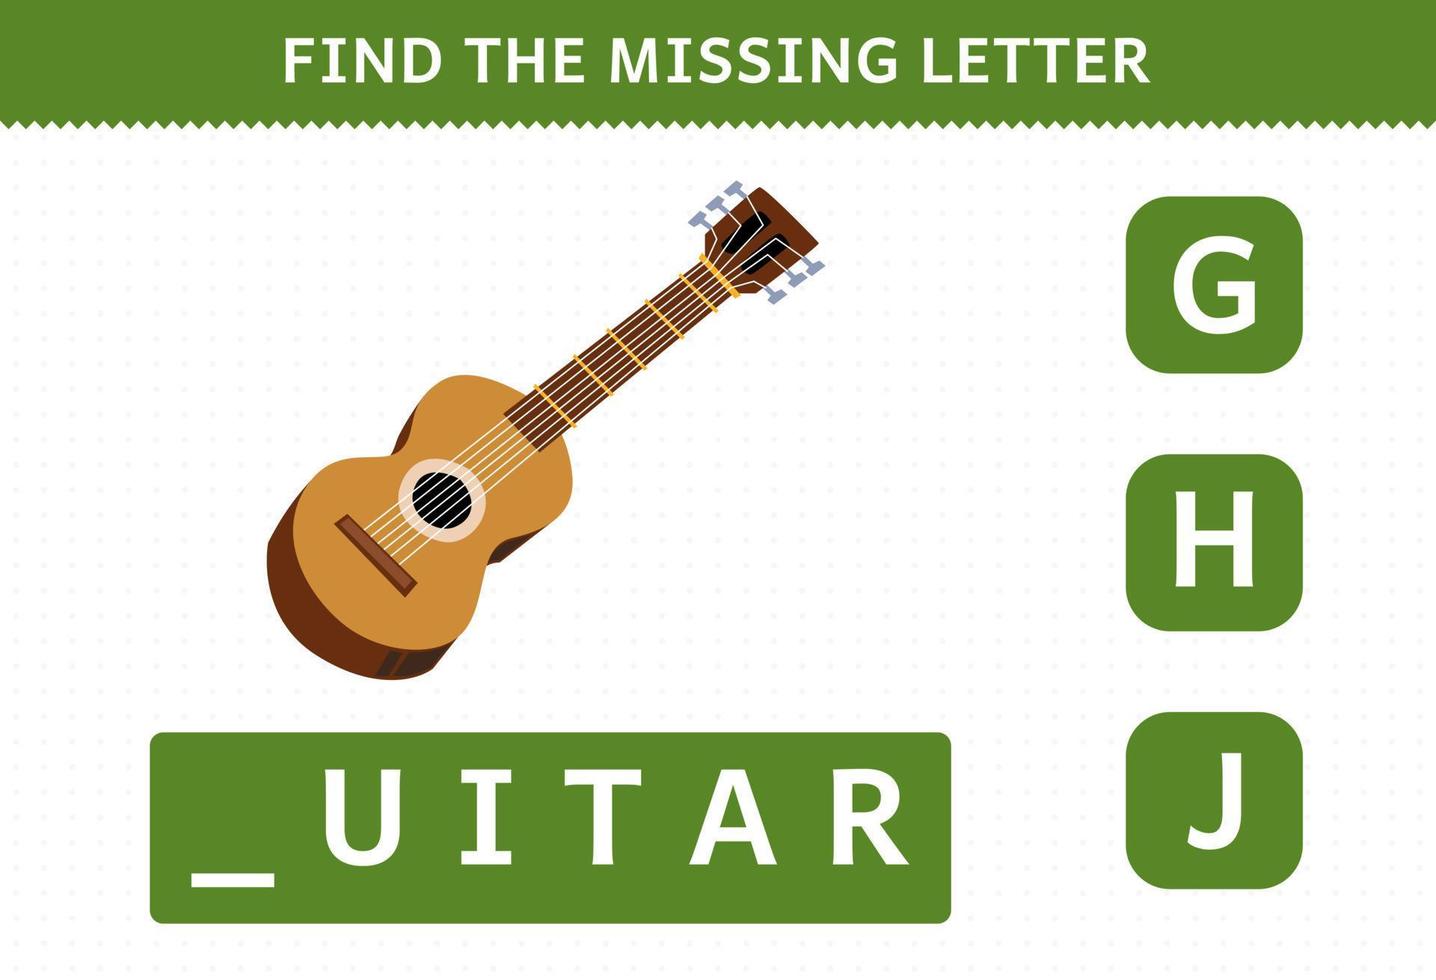 bildungsspiel für kinder finden fehlenden buchstaben cartoon musikinstrument gitarre arbeitsblatt vektor